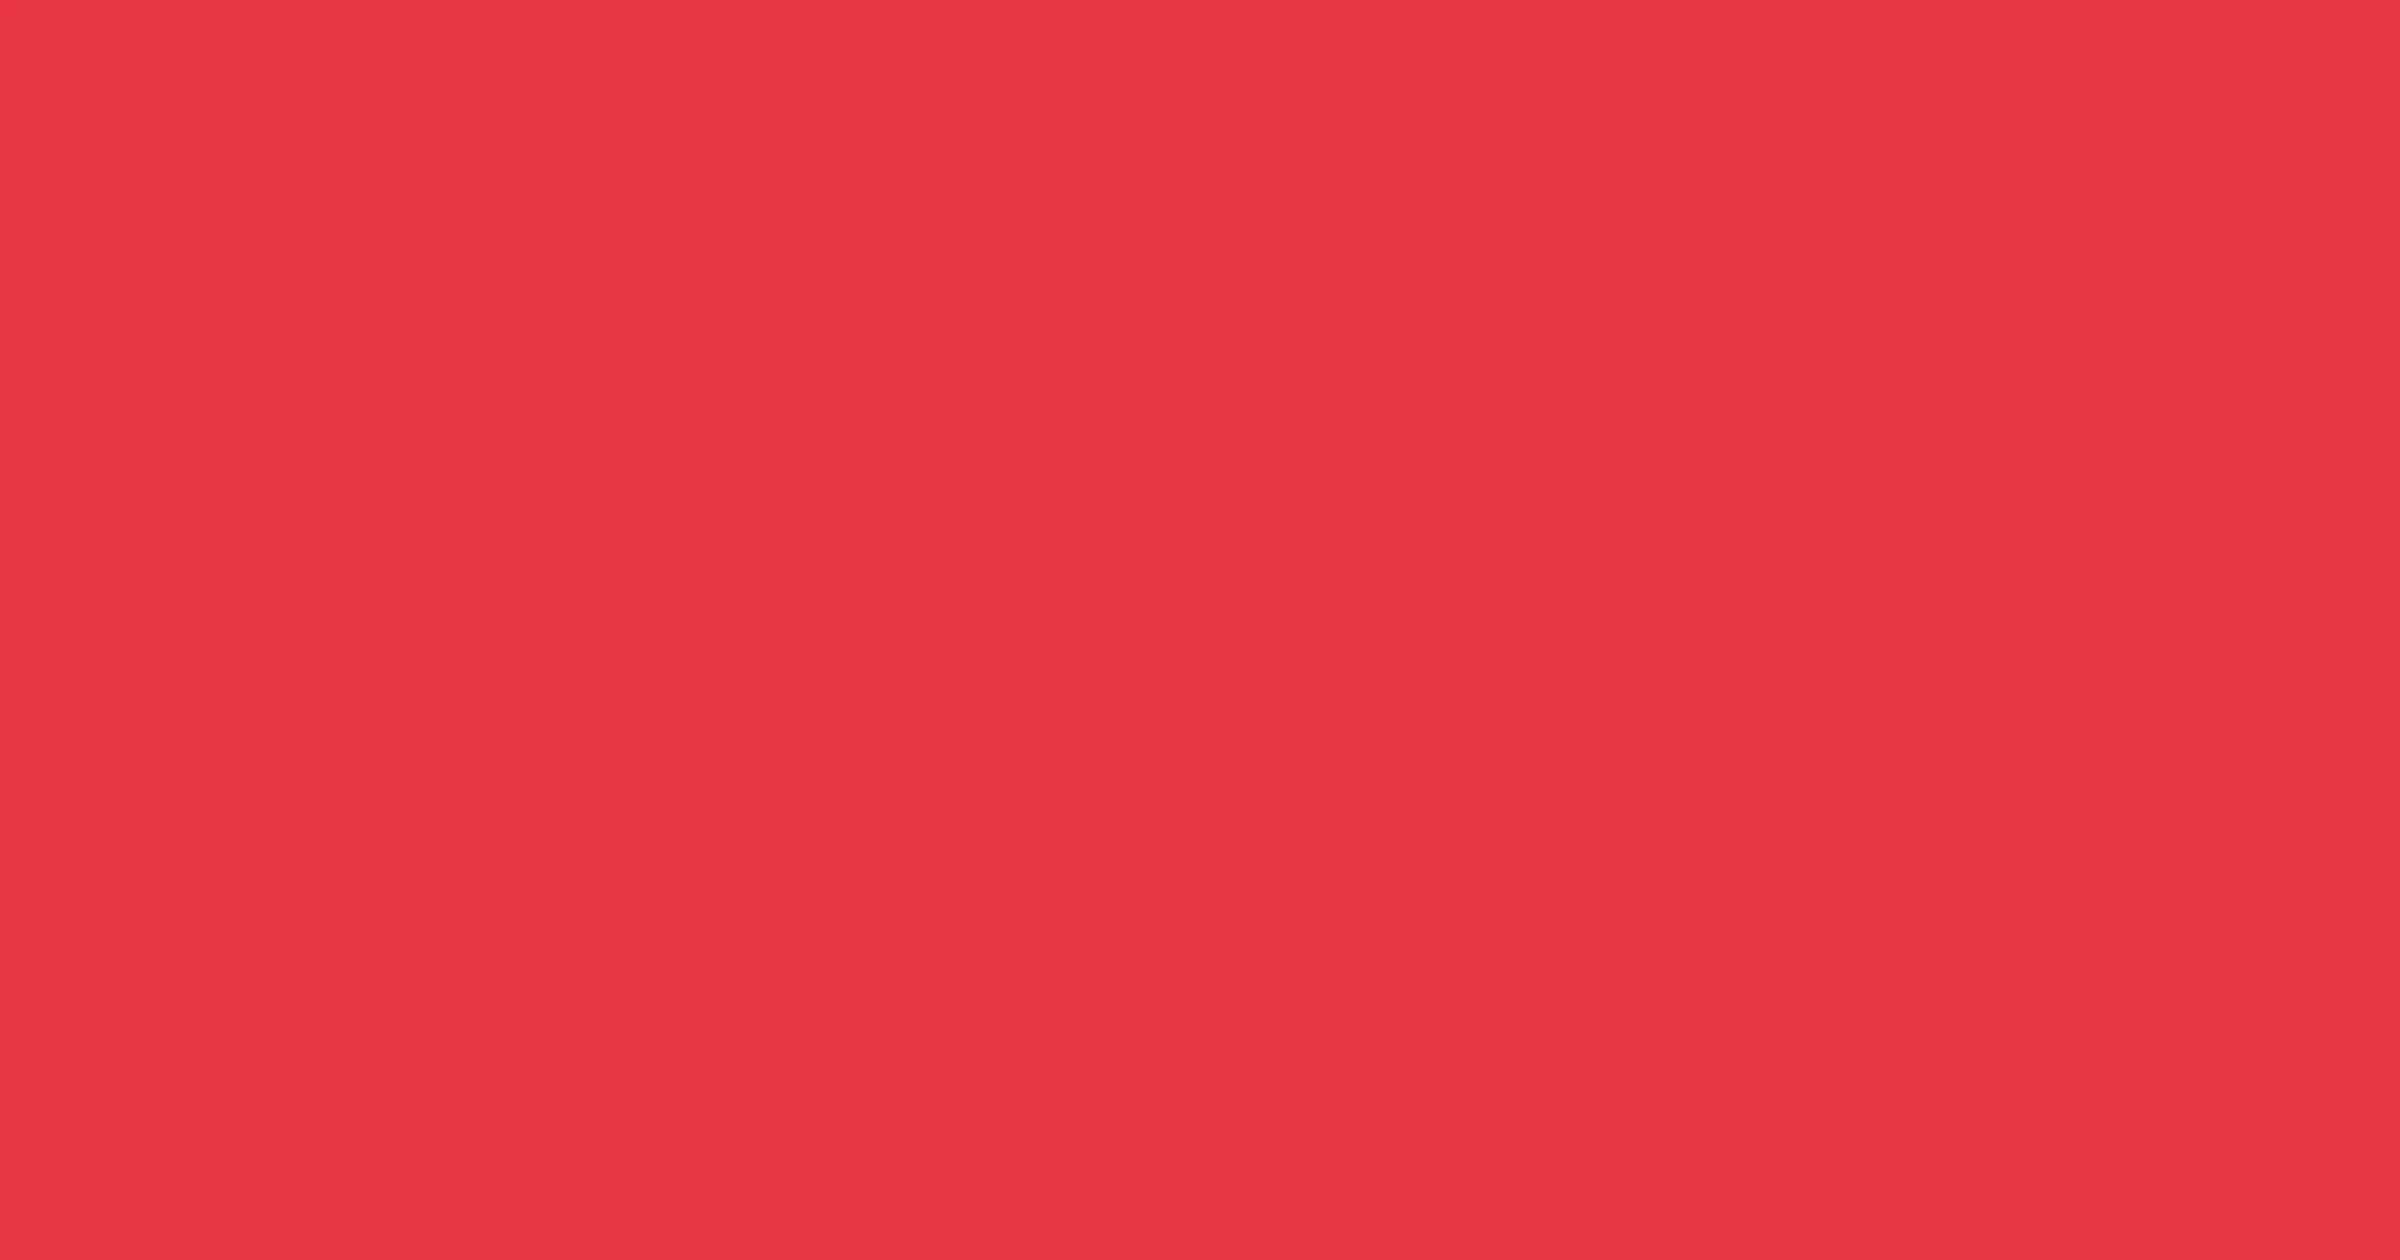 45 10 68. Пастельный красный цвет. Коралло листья. Алый розовый фон PNG. Plain Color Wallpaper.